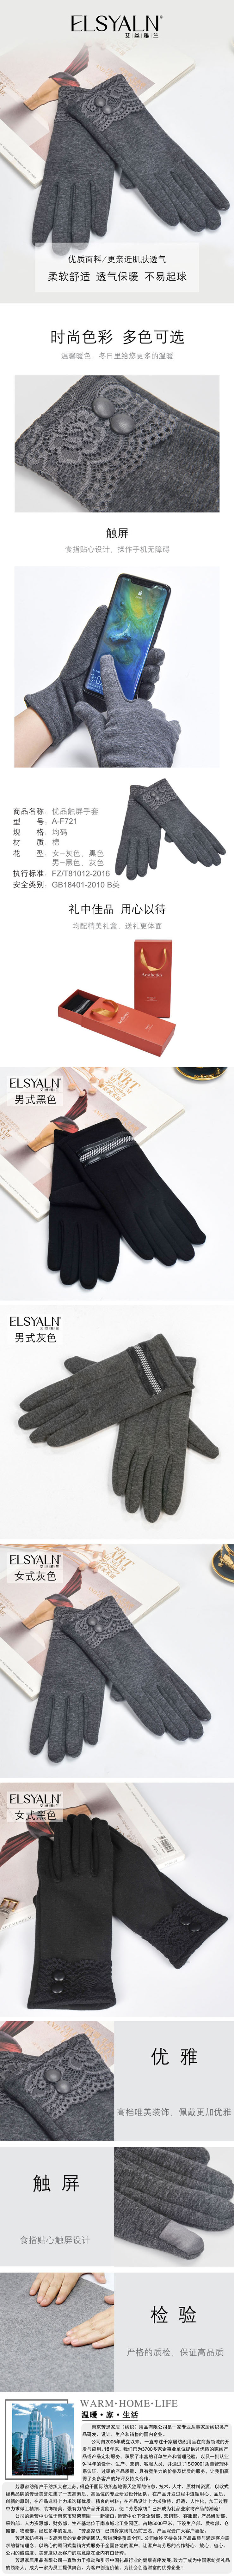 保暖手套,皮手套批发,福利礼品,手套工